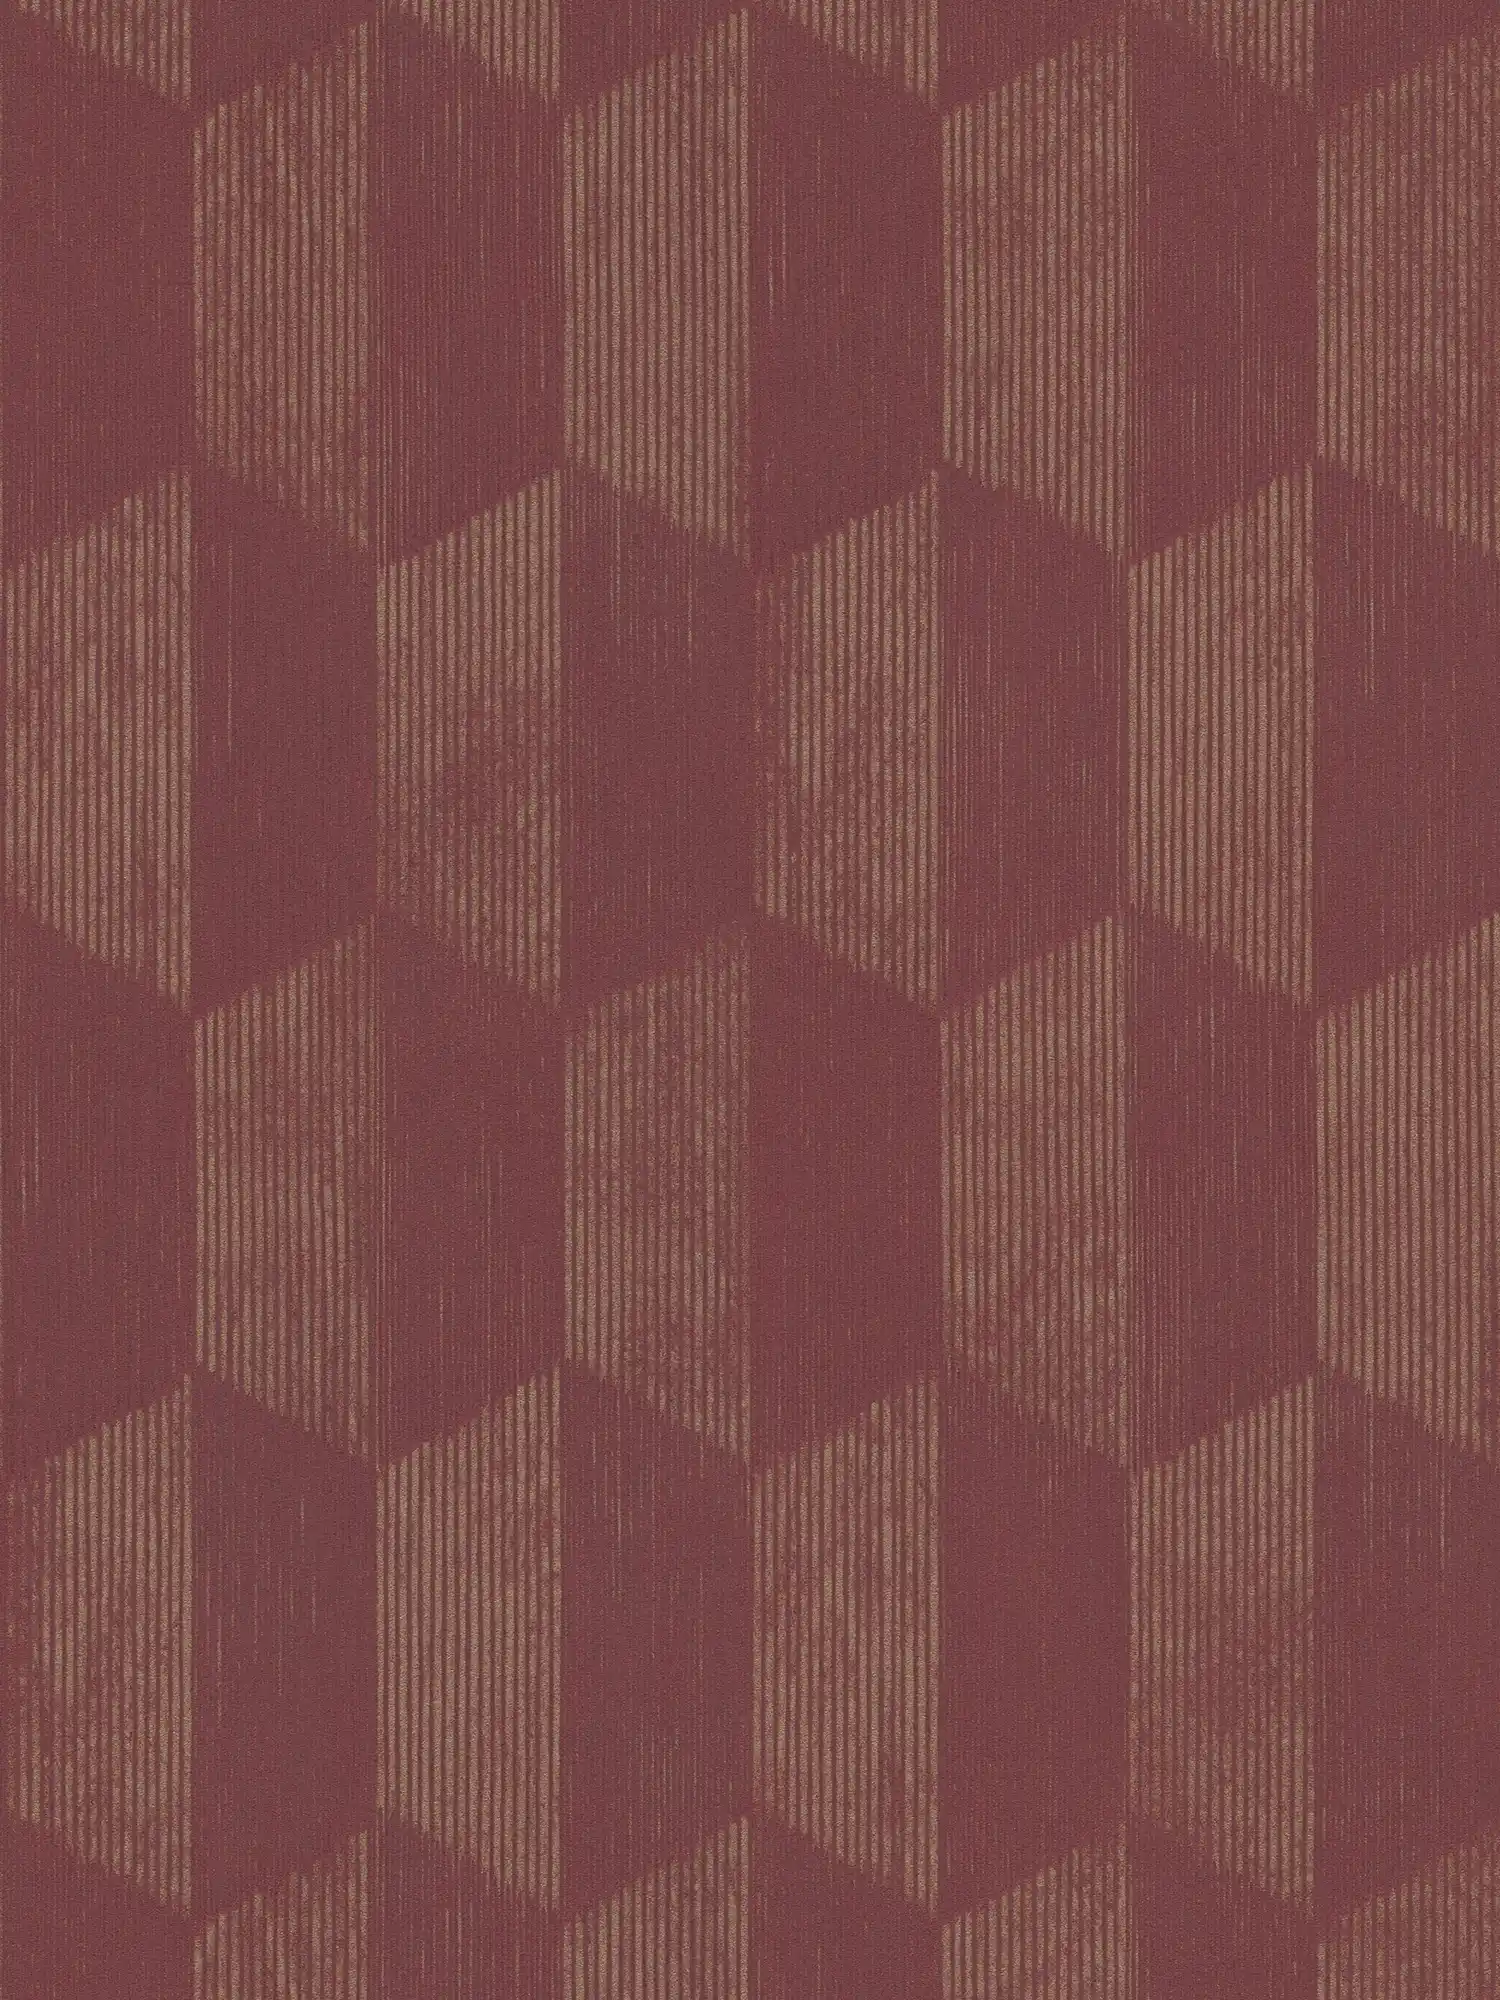 Strukturtapete mit 3D Grafik Muster – Metallic, Rot
